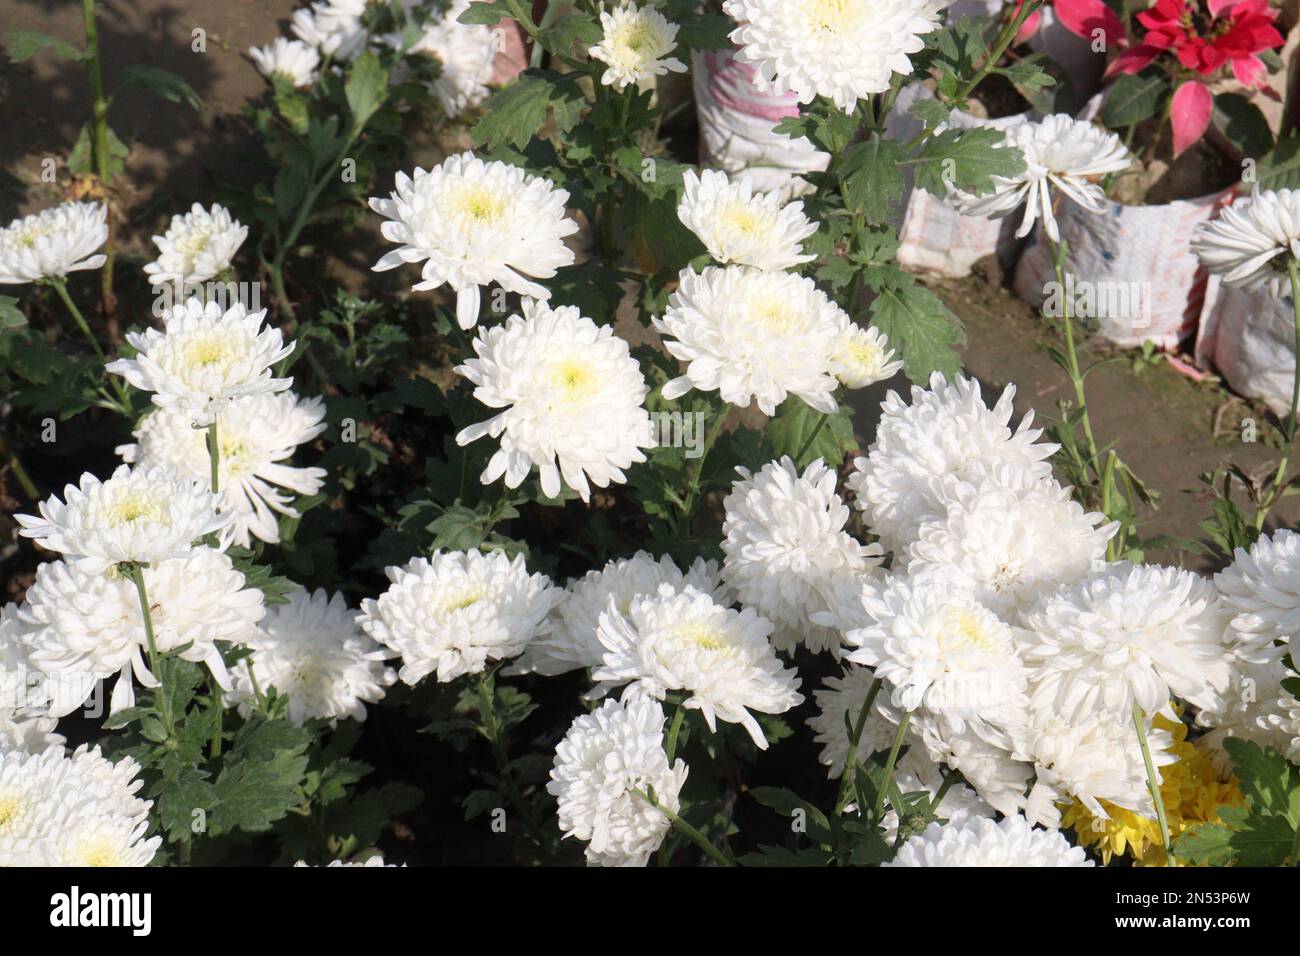 la flor de tautropfen de la podredumbre del chrysantheme de color blanco en la granja para la cosecha son cultivos comerciales Foto de stock